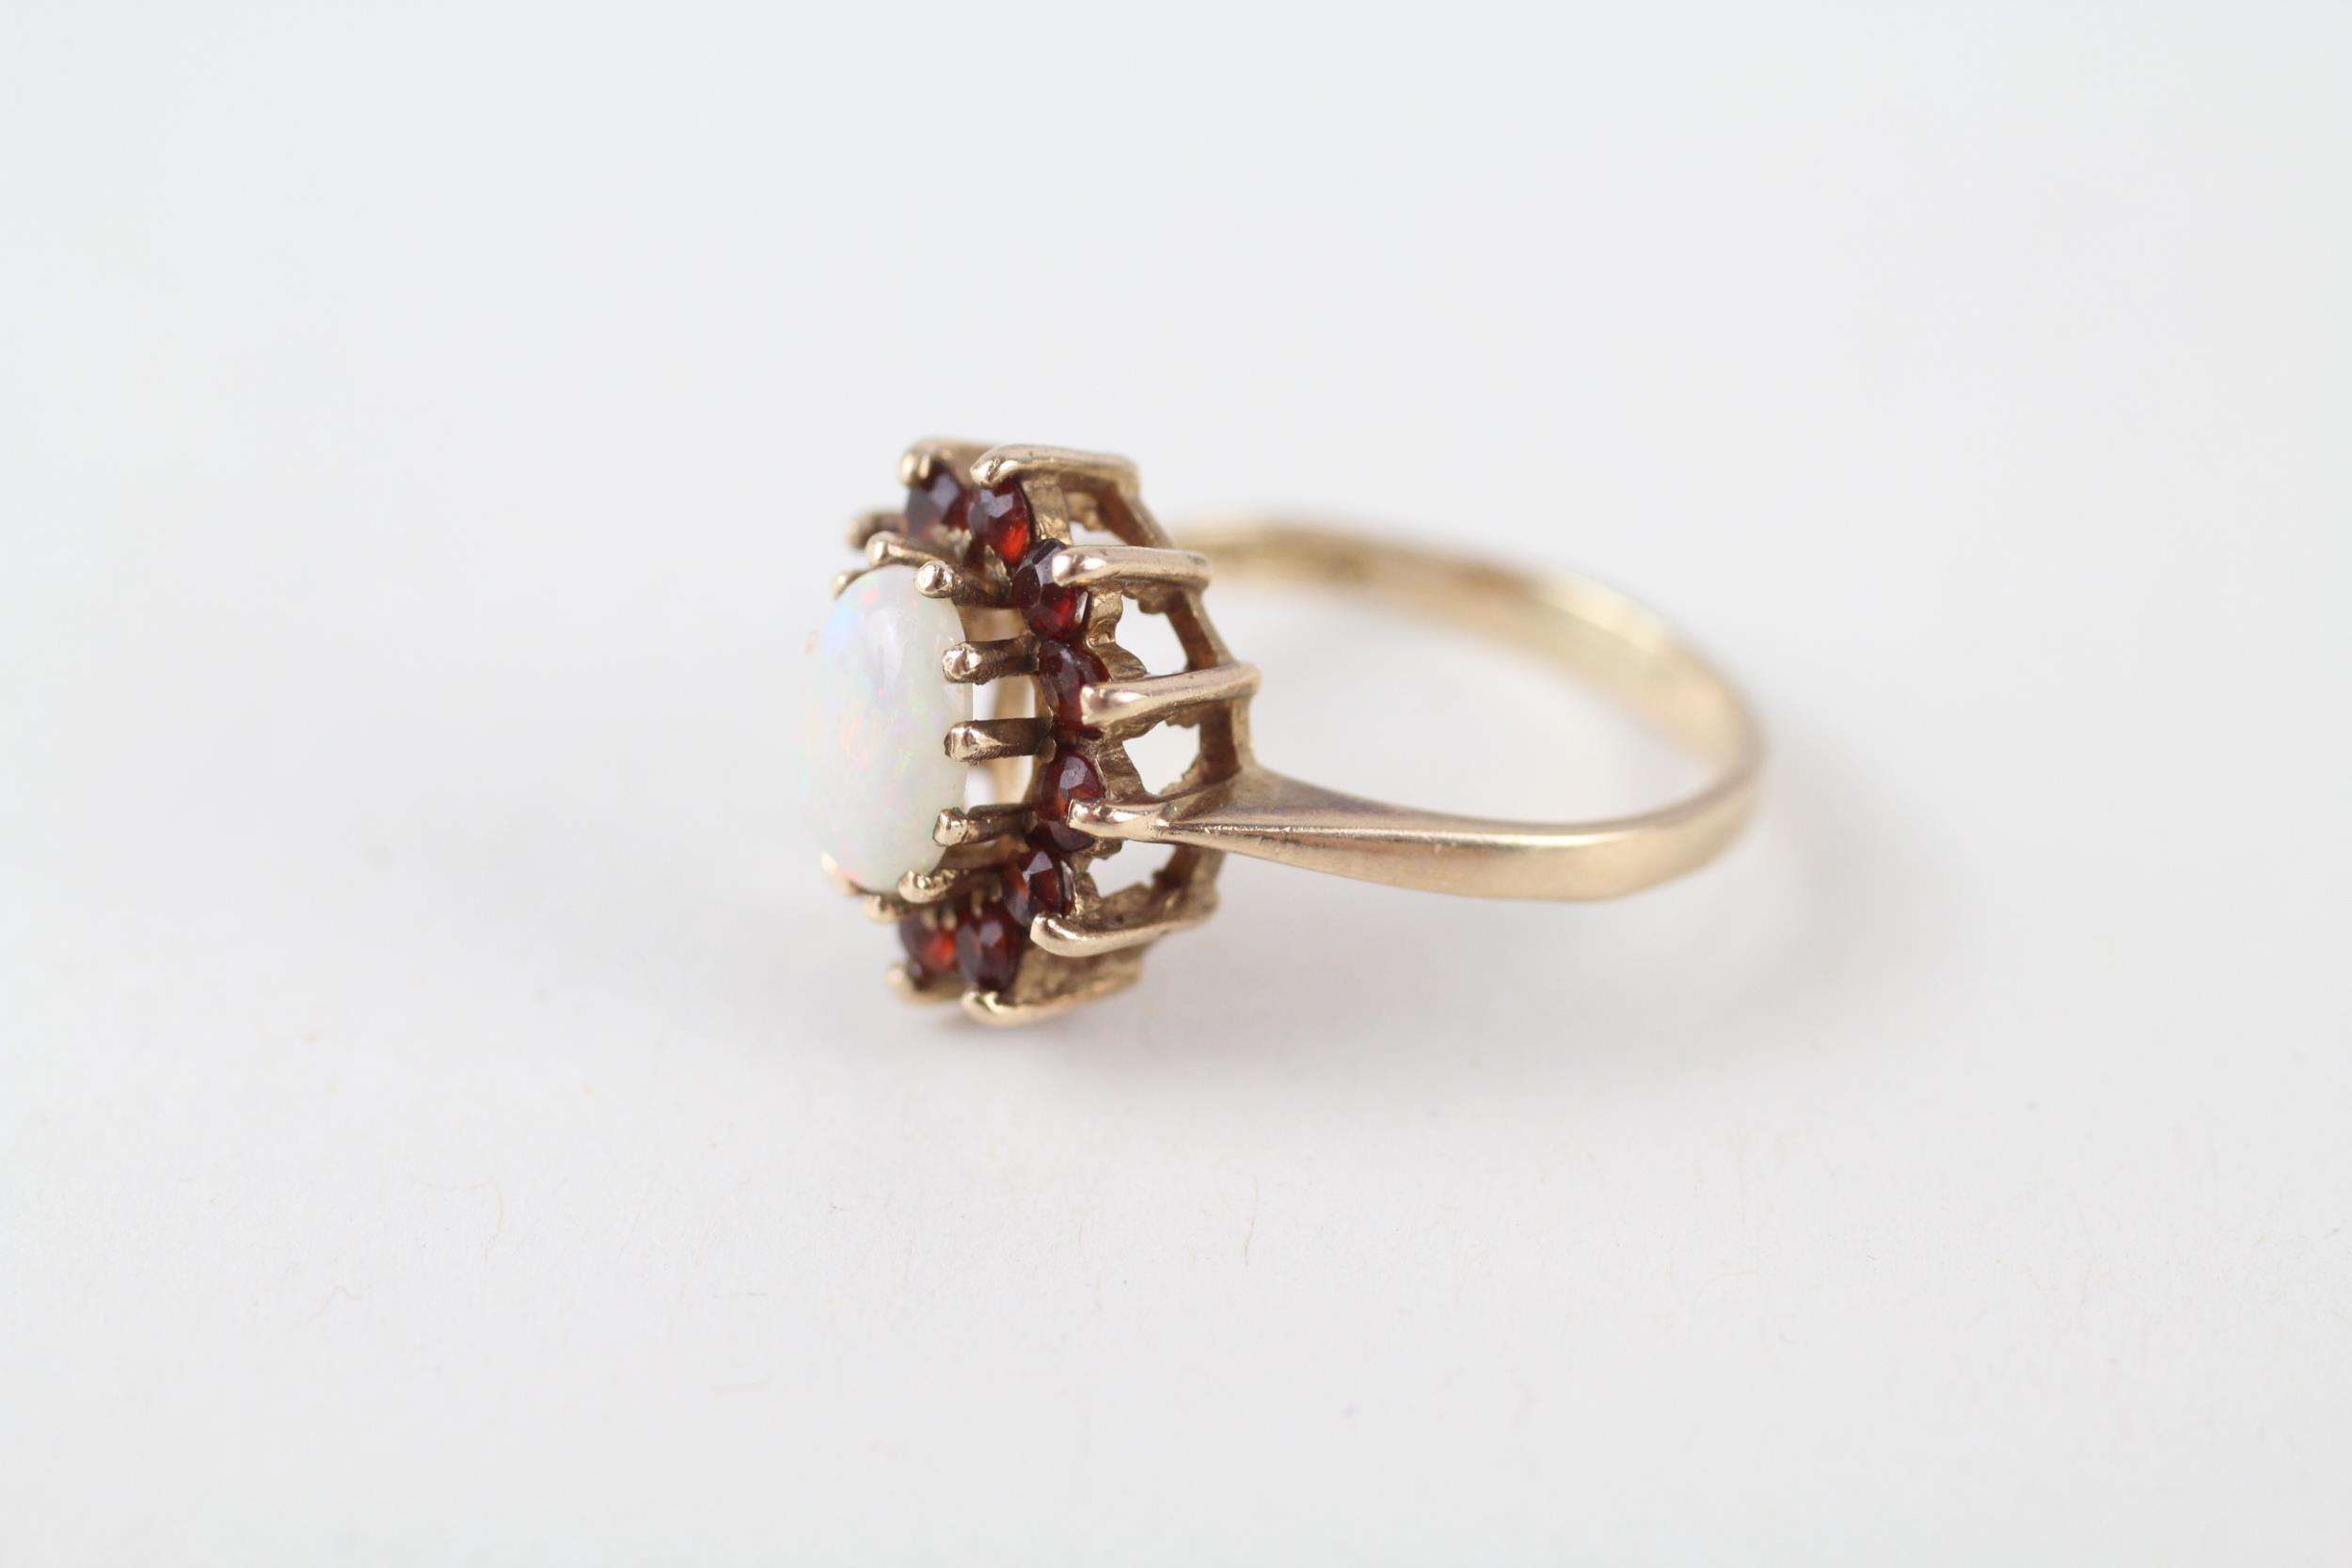 9ct gold vintage opal & garnet cluster ring (2.3g) Size K - Image 3 of 4